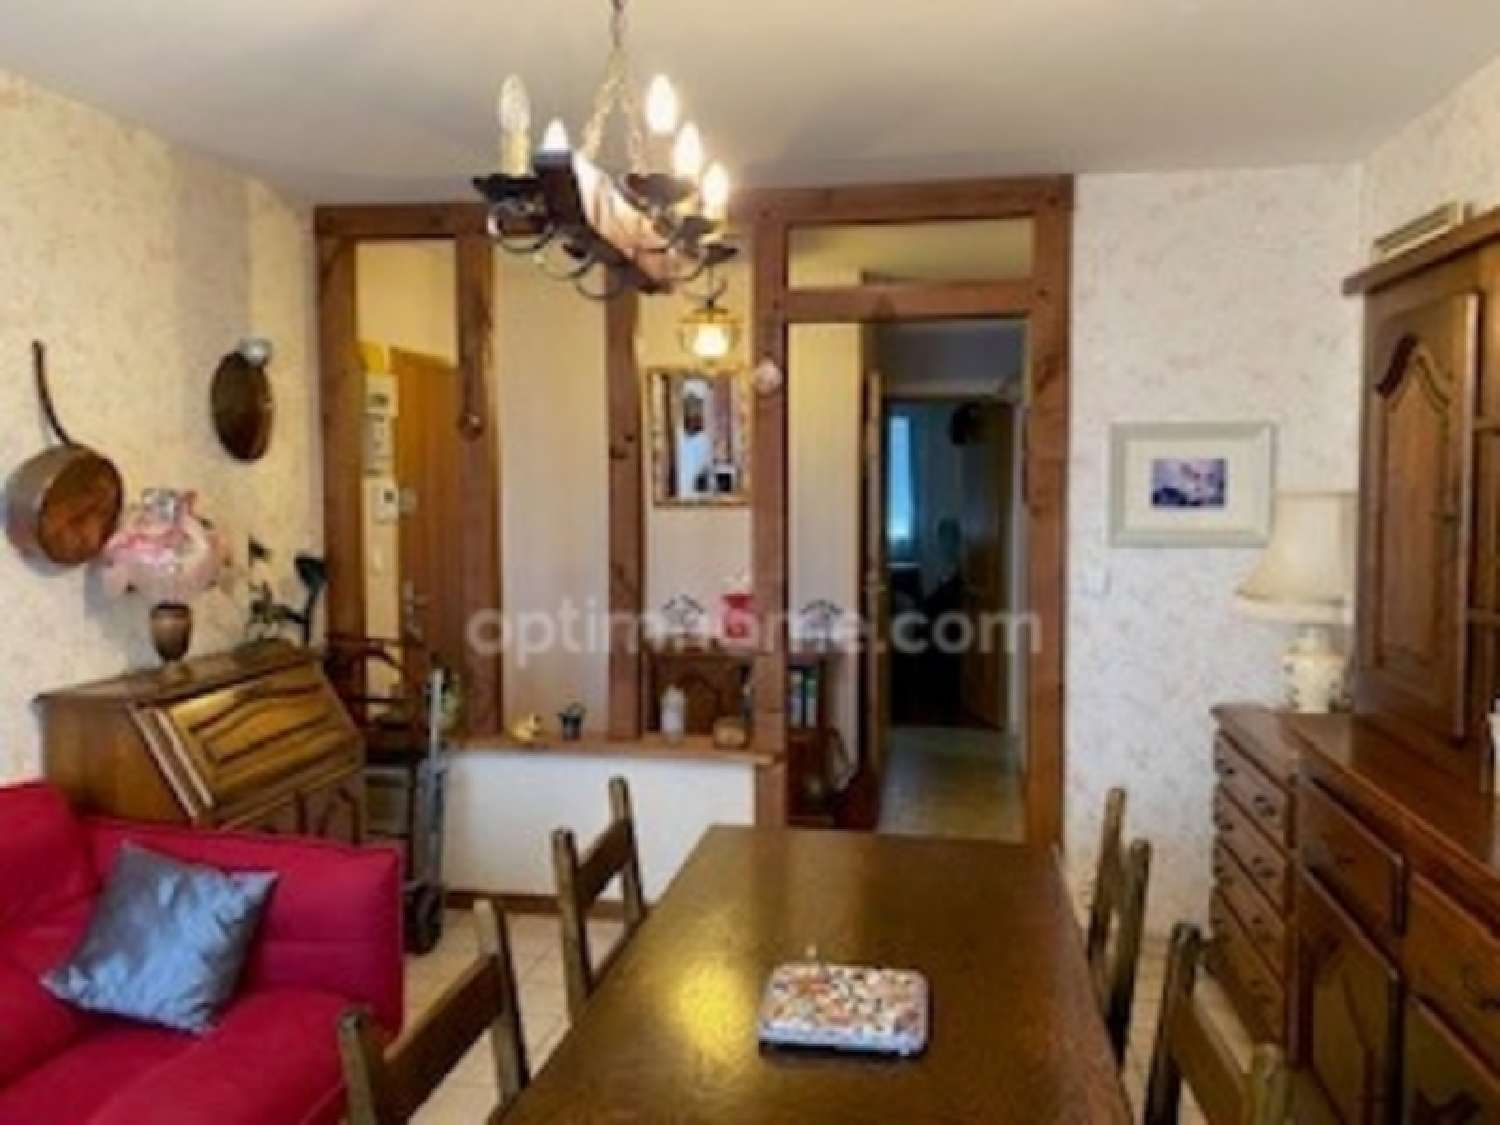  for sale apartment Fleury-les-Aubrais Loiret 2